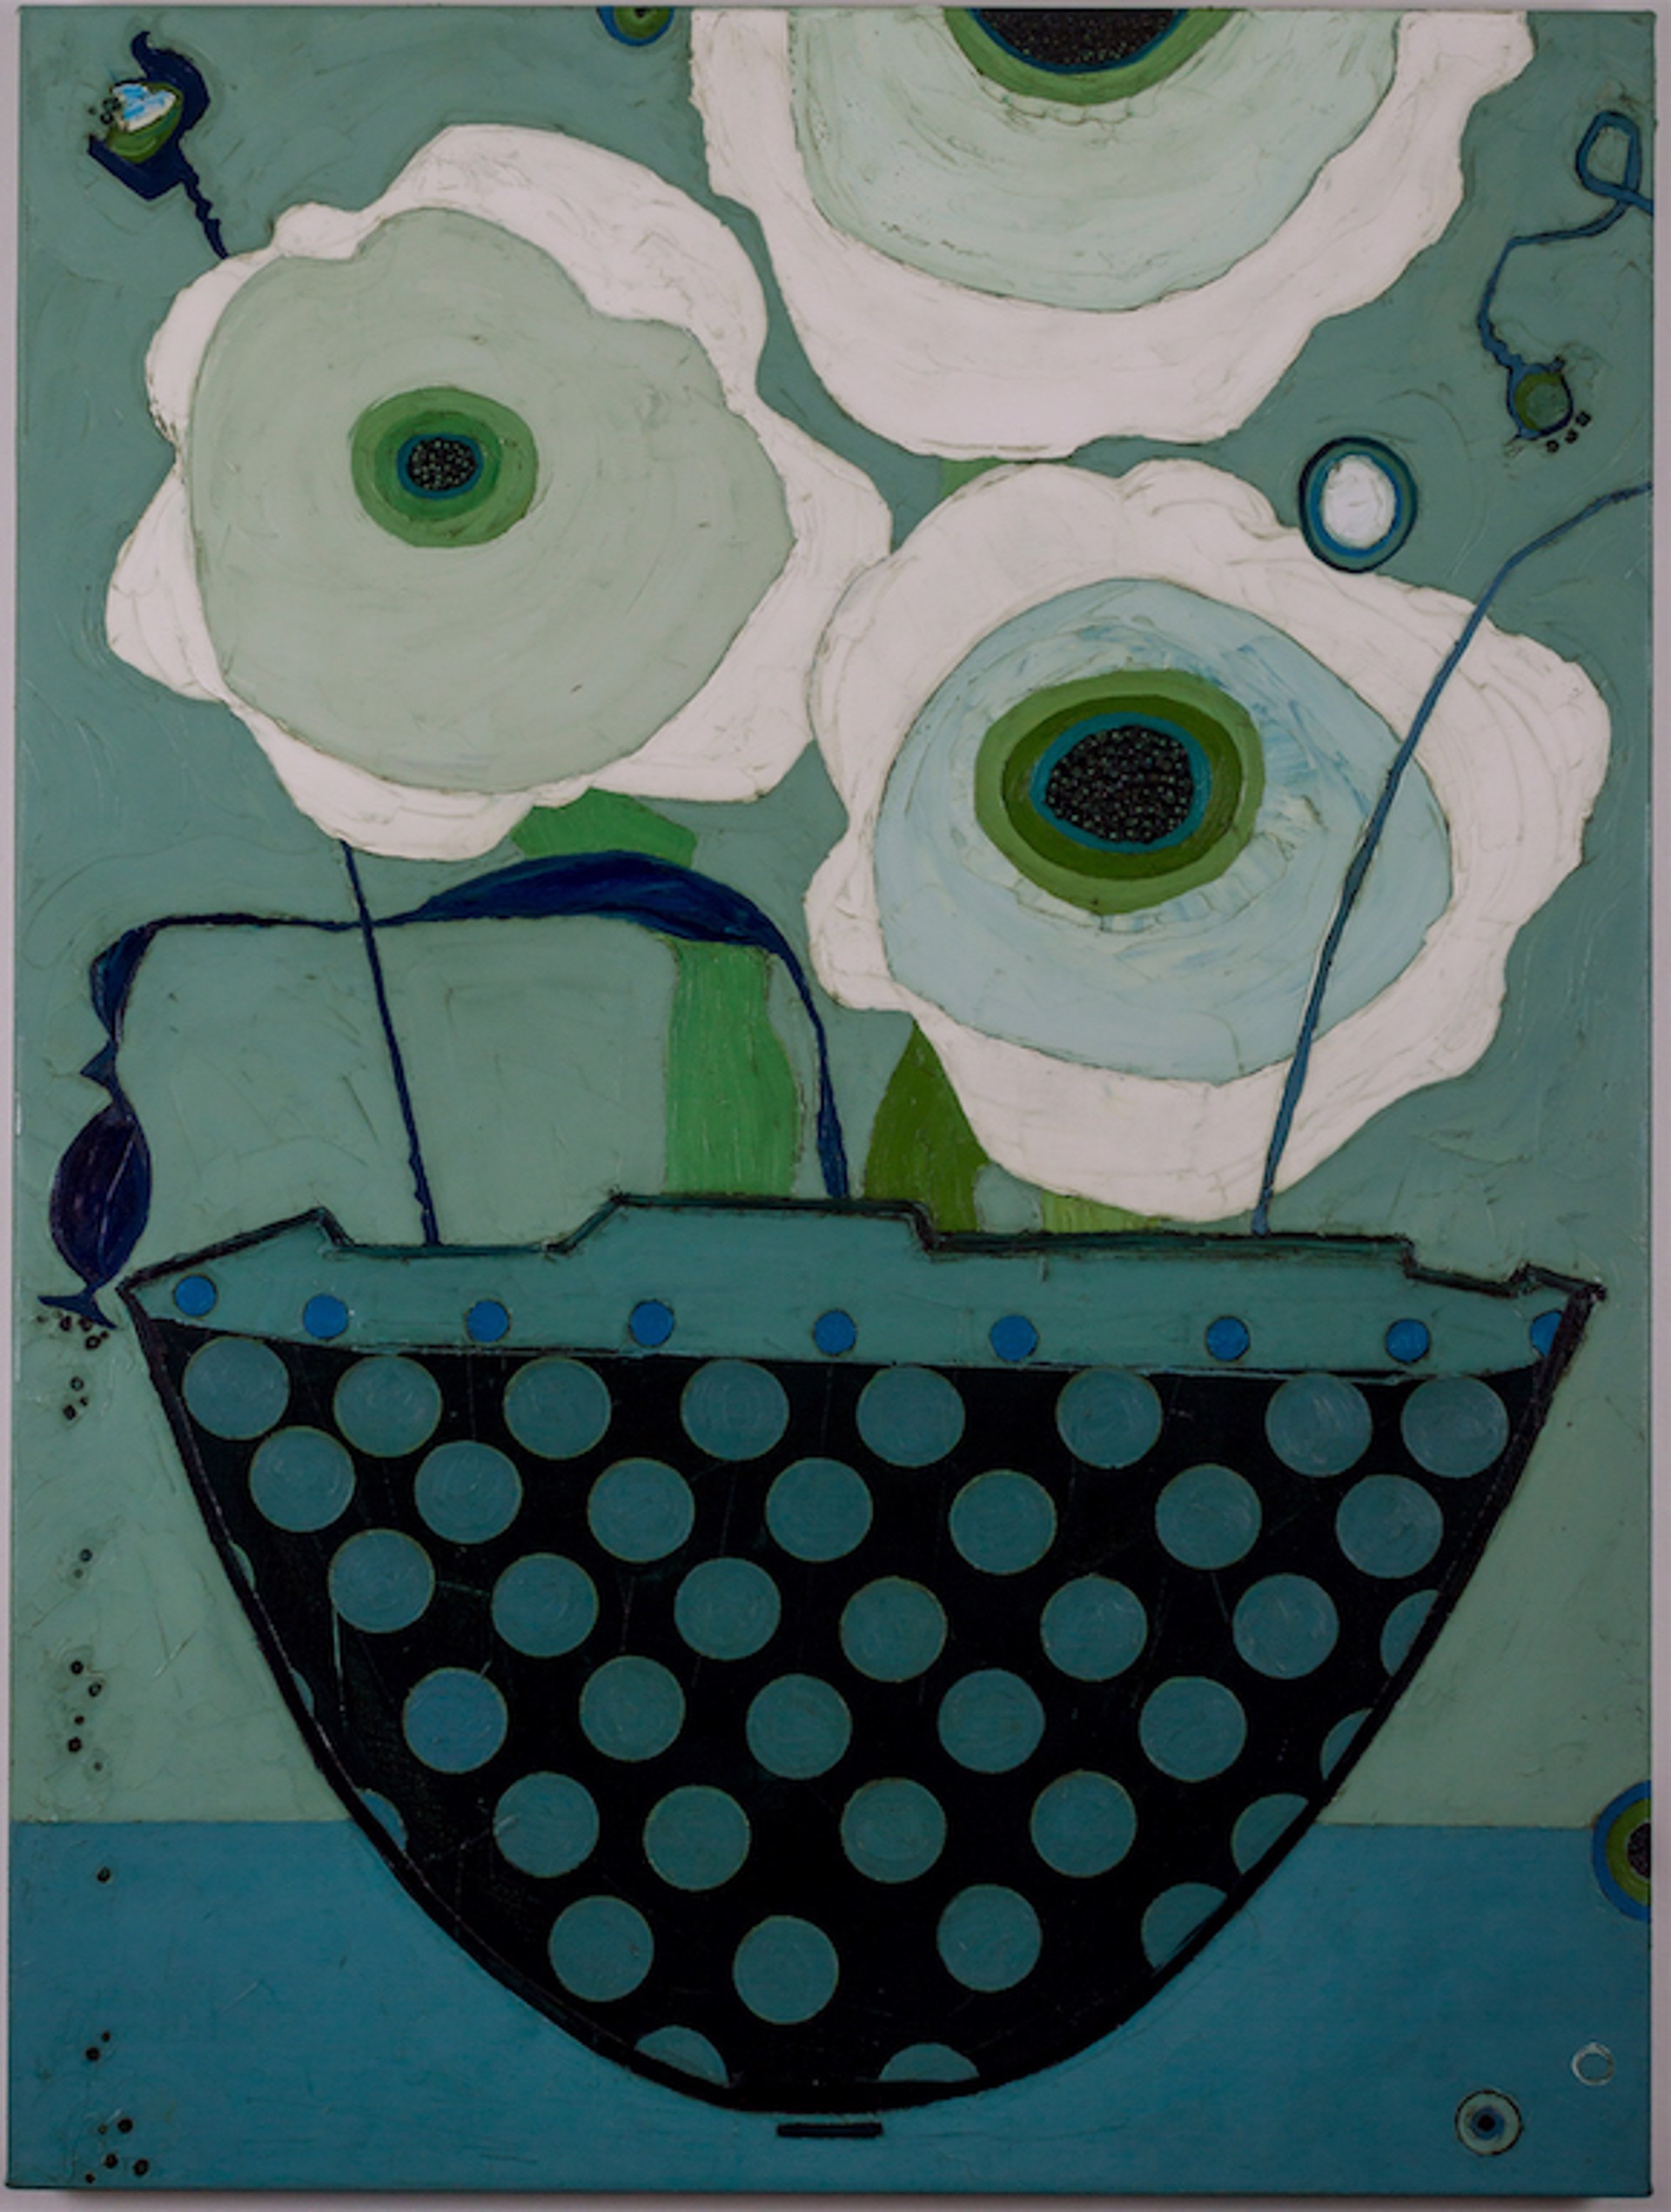 Polka Dot Bowl with White Poppies by Karen Tusinski